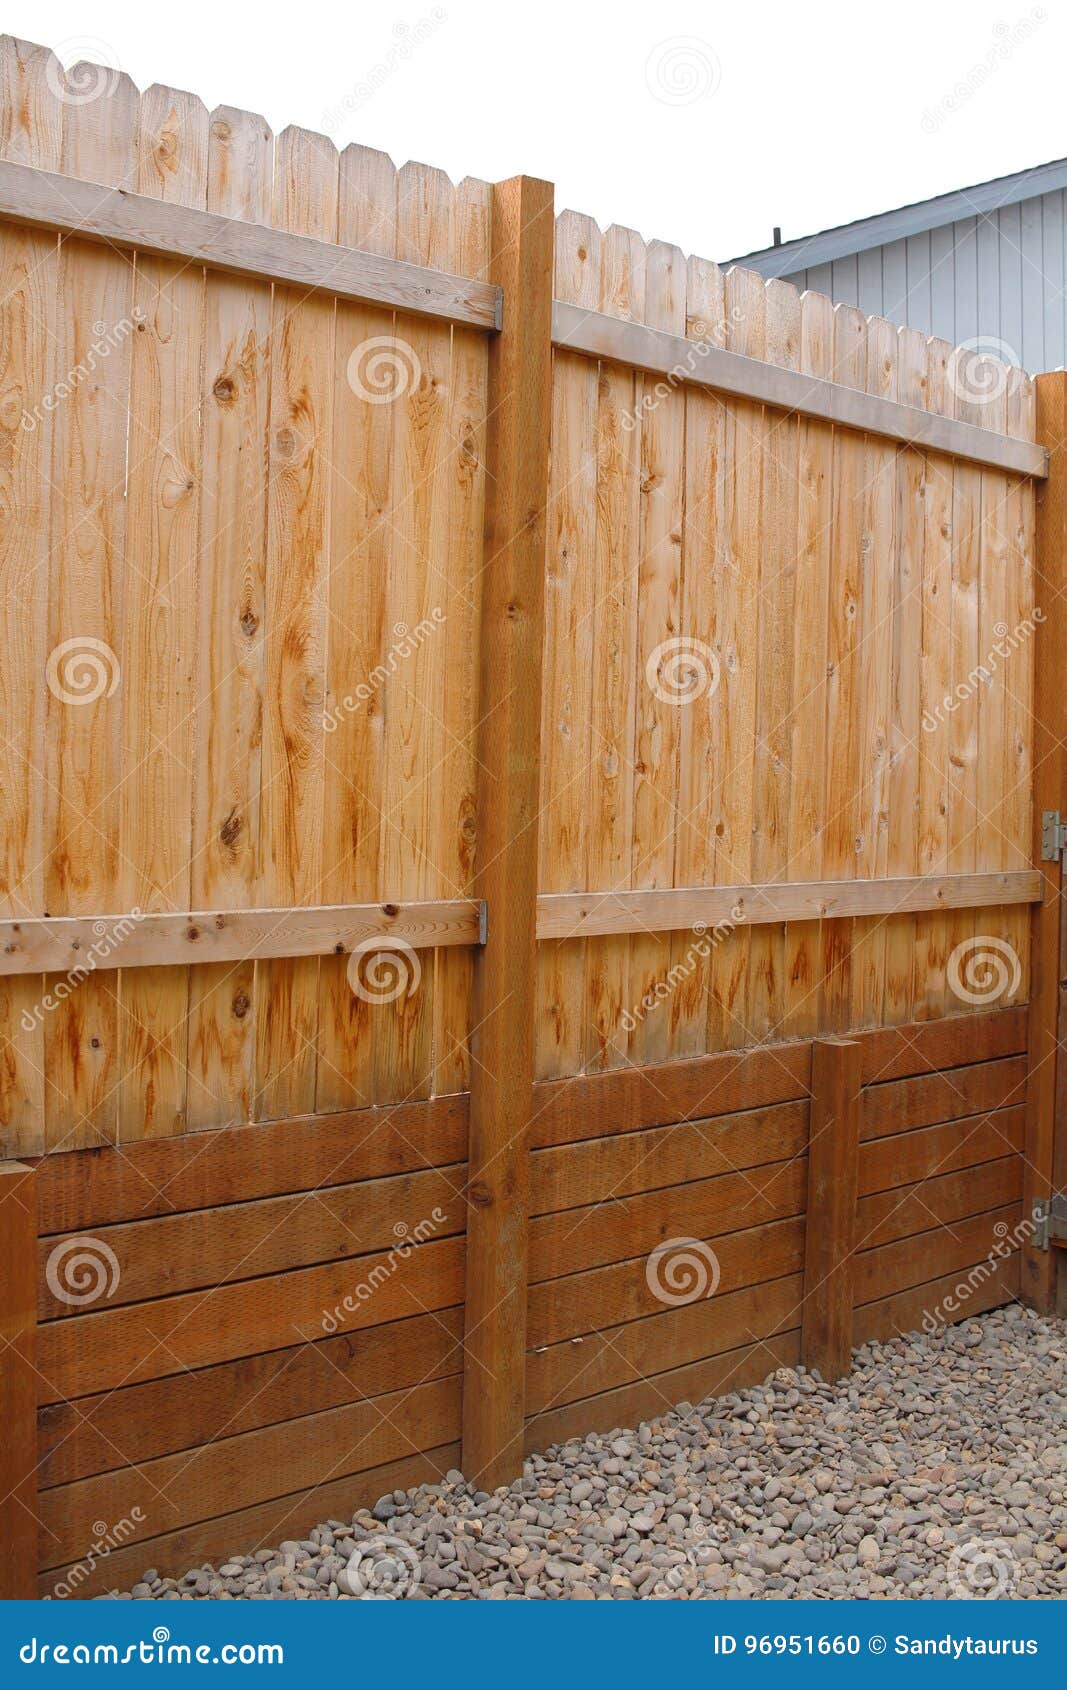 muro de pequeños palos de madera Stock Photo